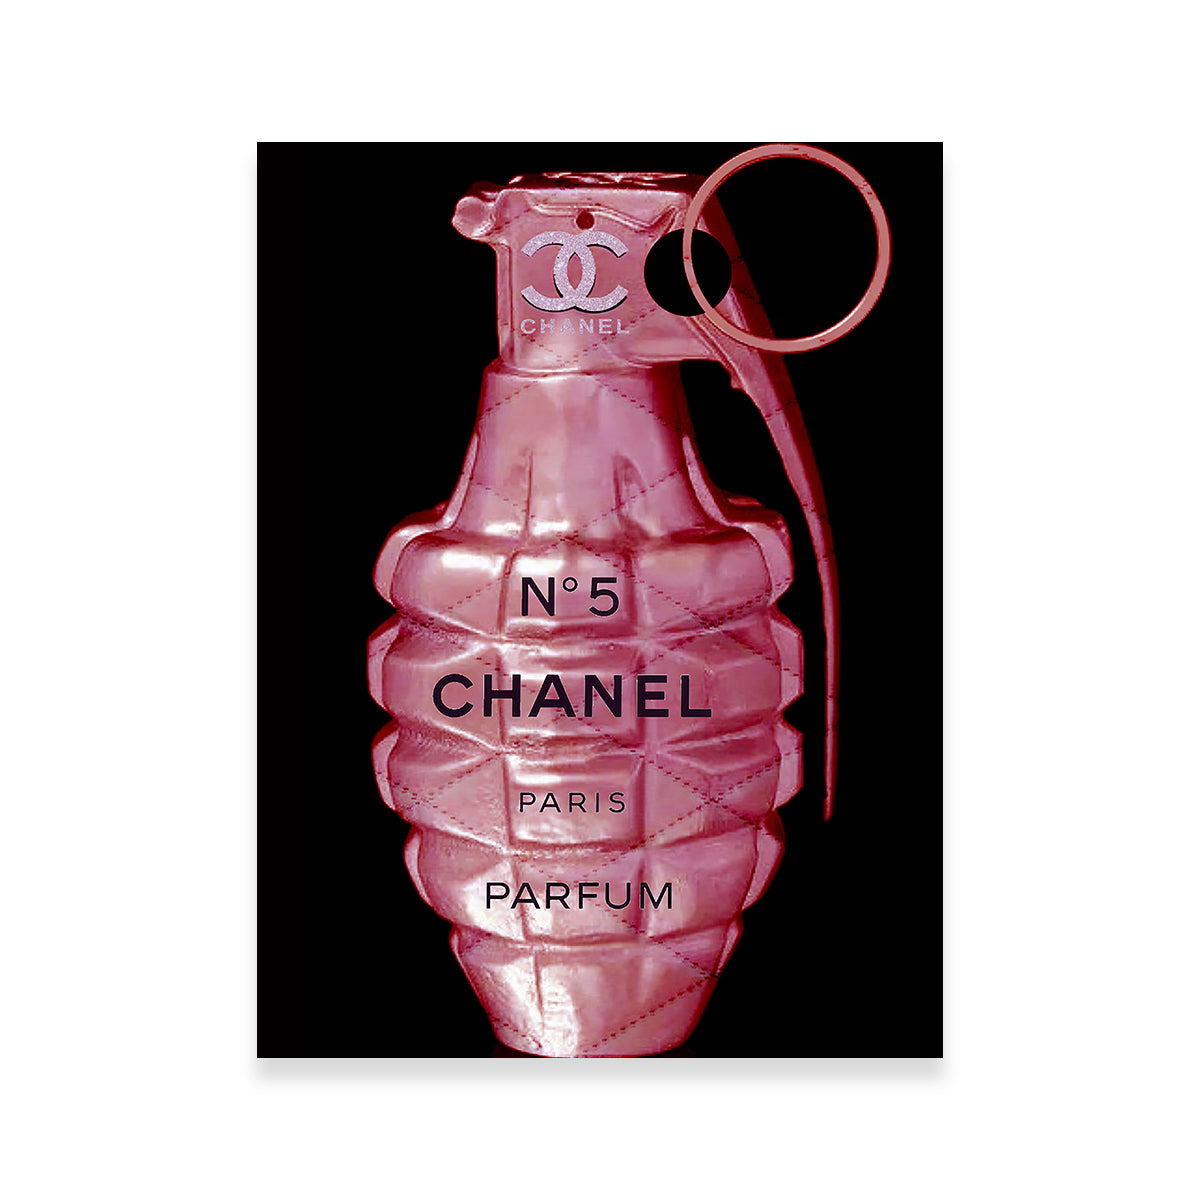 Chanel No. 5 Grenade